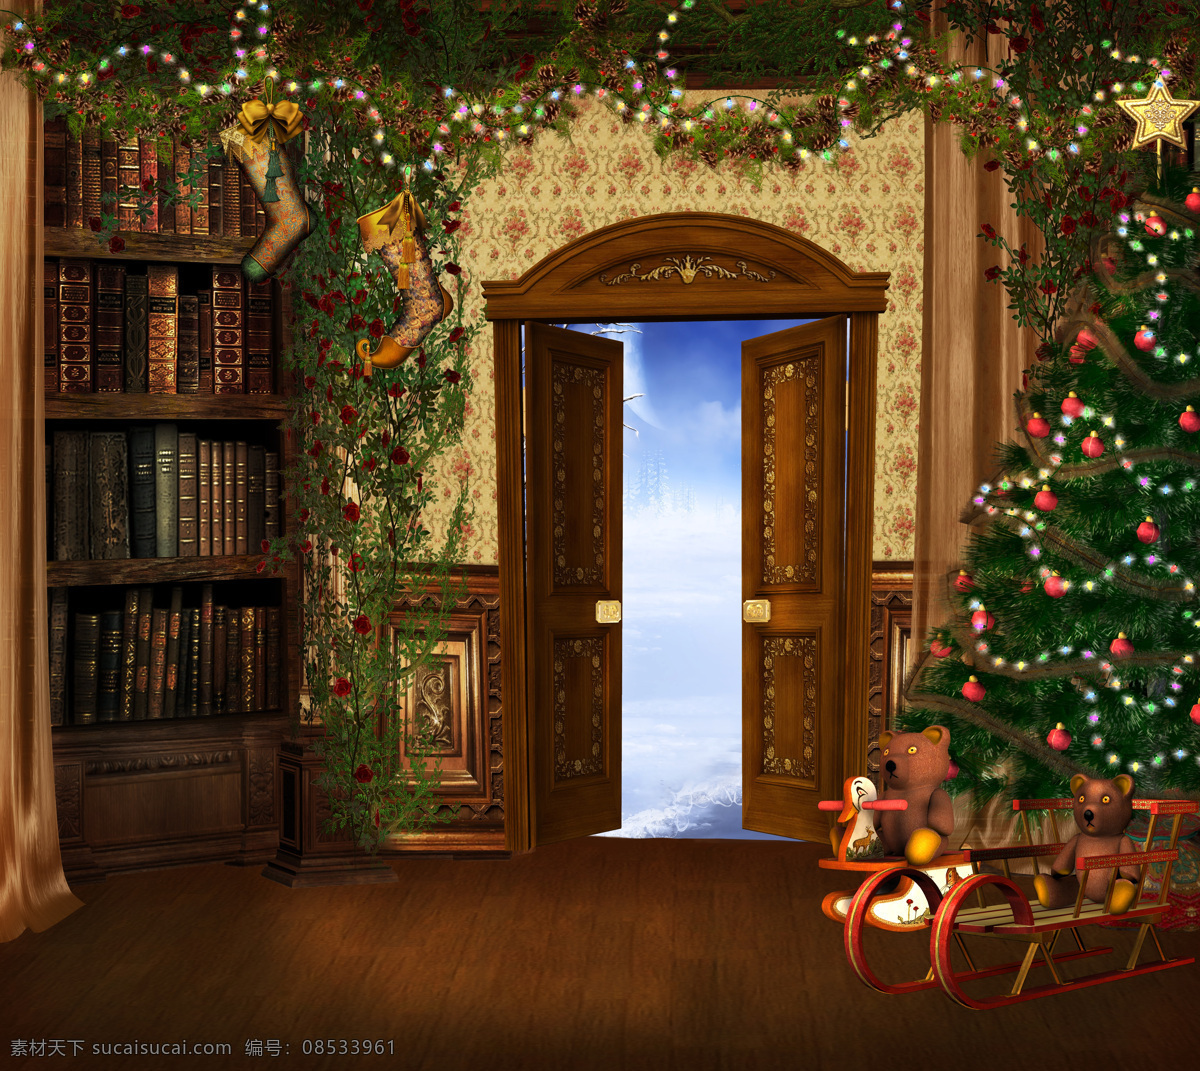 圣诞背景 圣诞节 圣诞礼物 大门 雪橇车 圣诞树 童话背景 相片模板 梦幻 风景漫画 动漫动画 童话风格